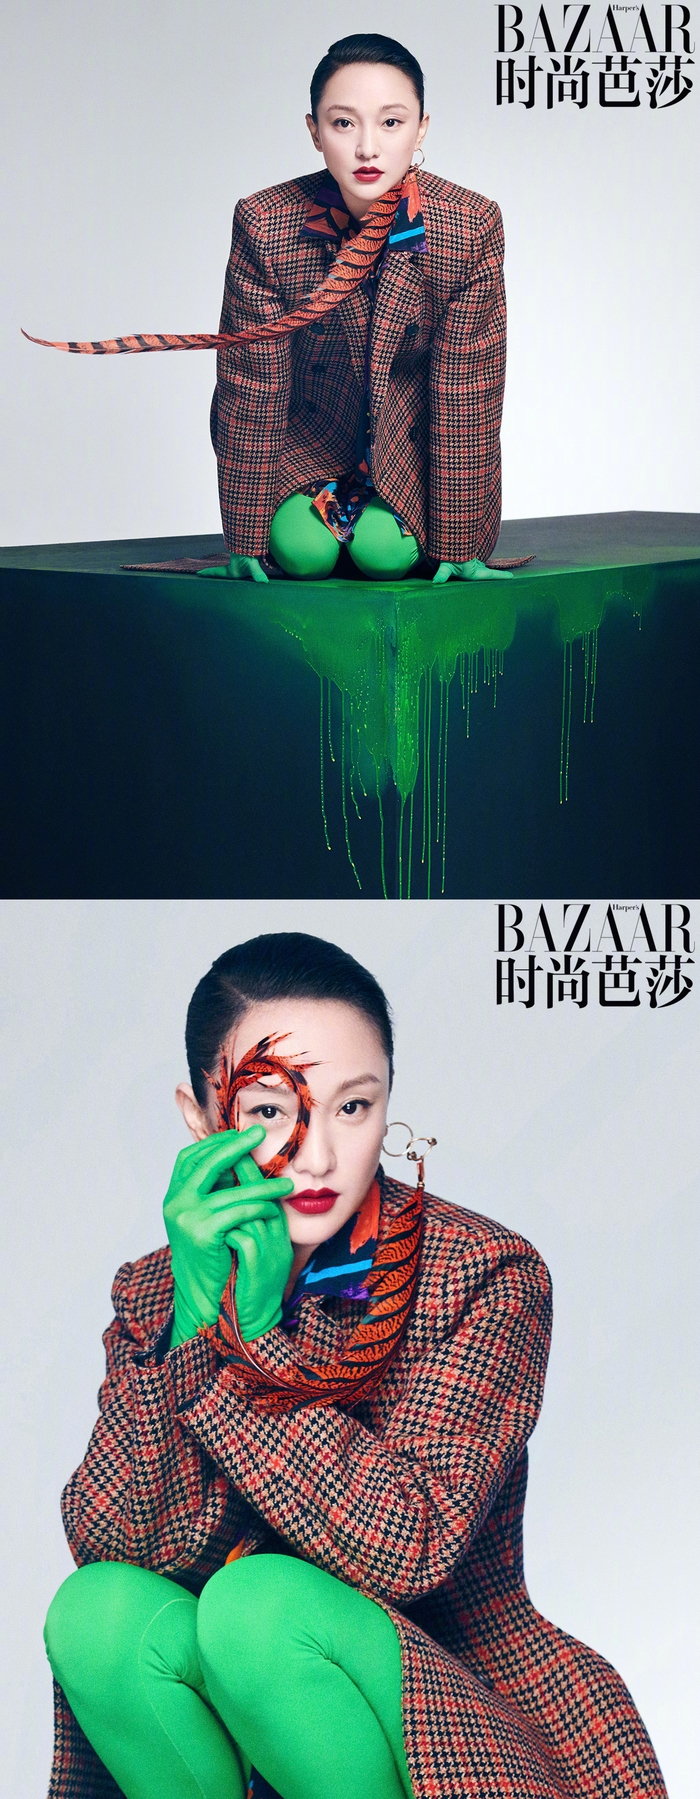 Lâm Tâm Như, Nhiệt Ba và sao nữ Cbiz chứng minh tầm trọng photoshop